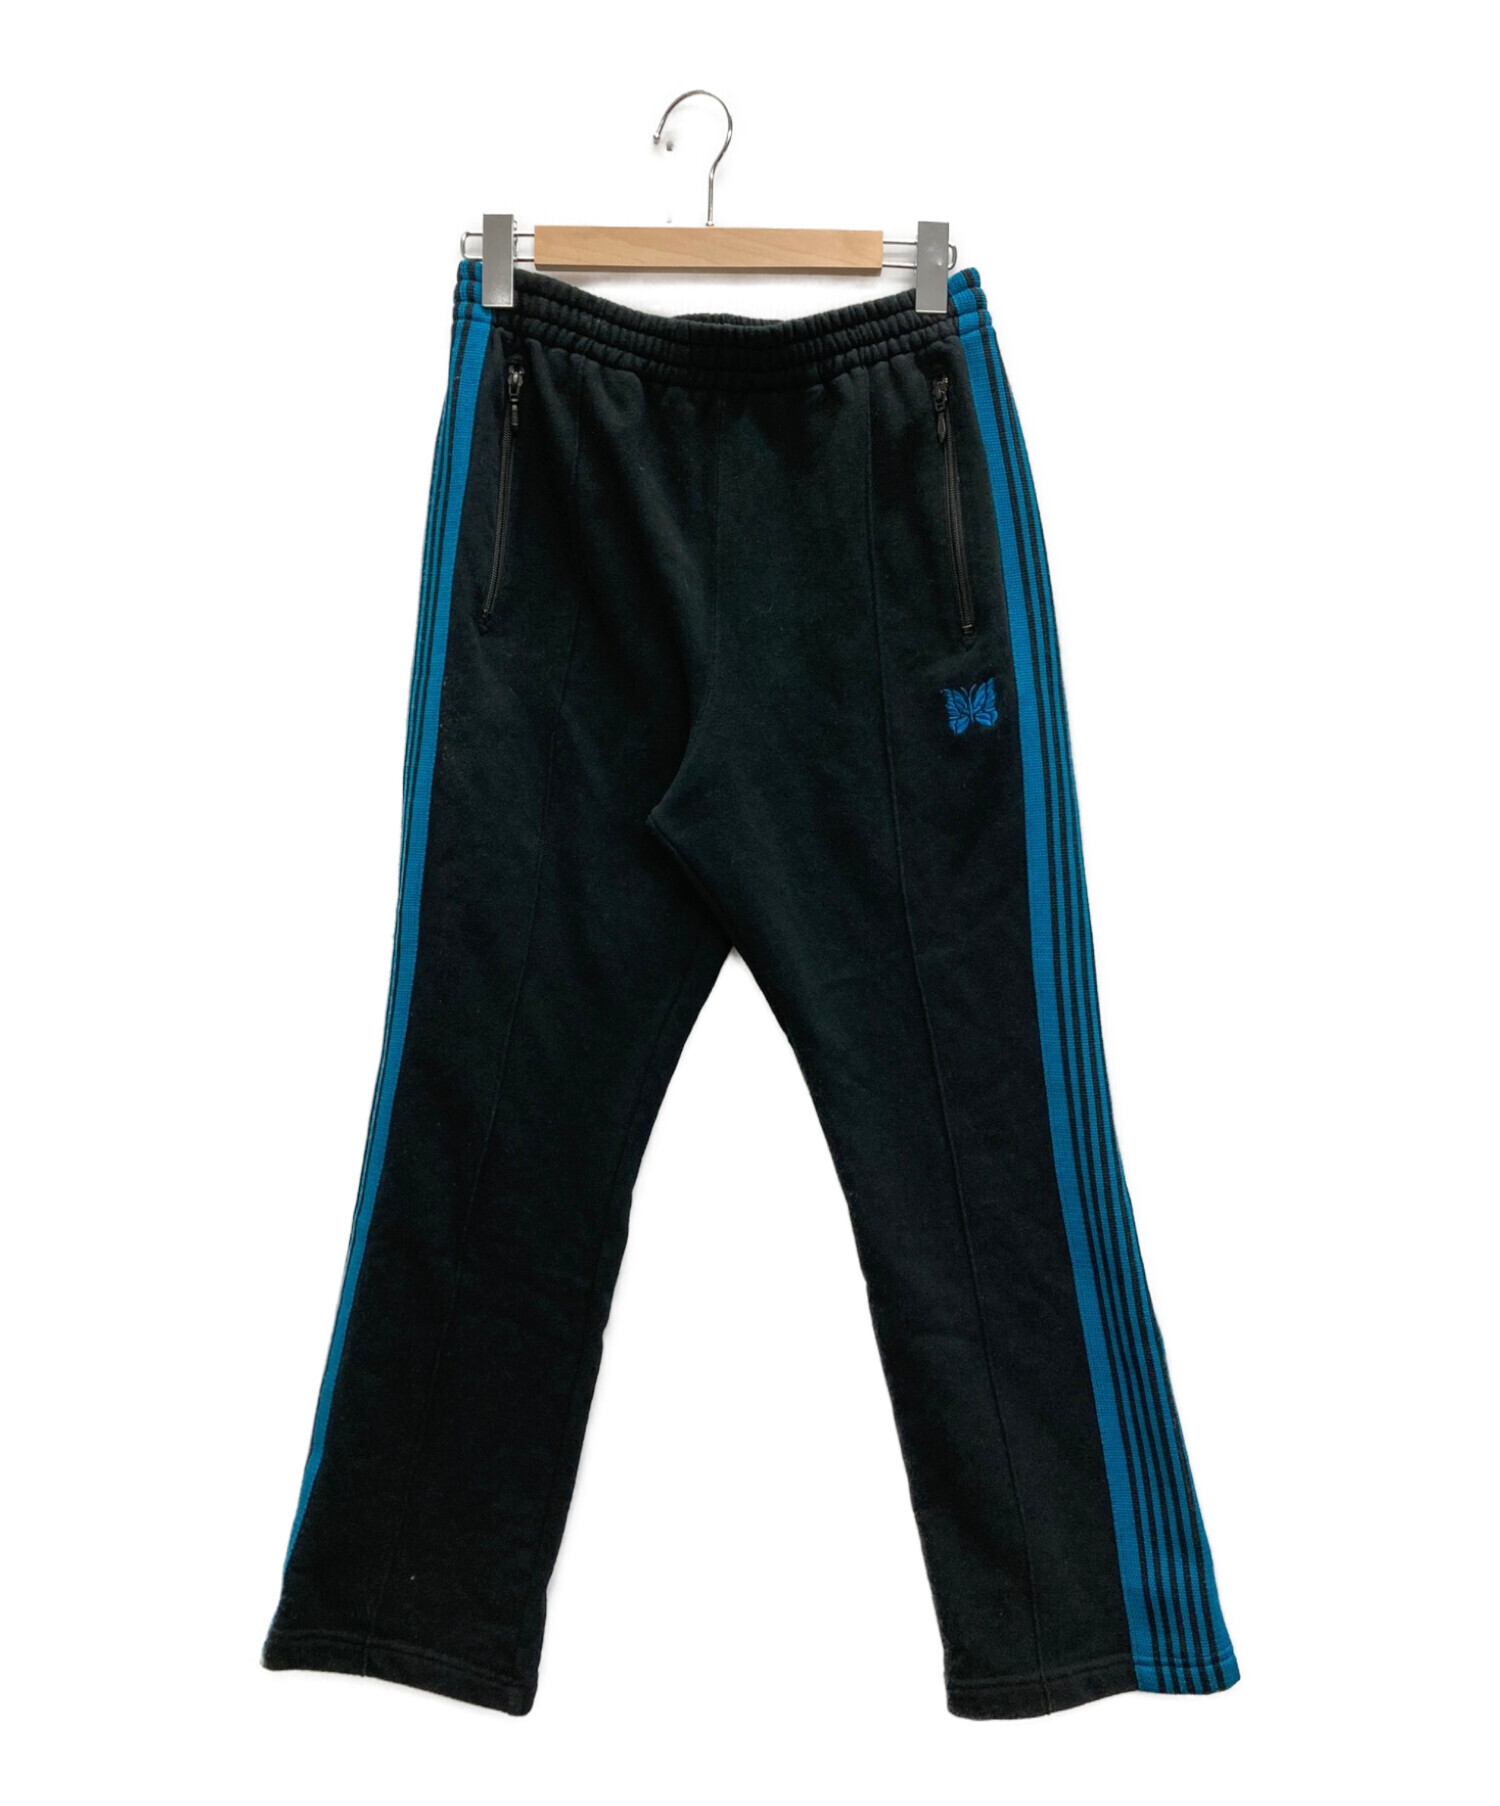 Needles (ニードルズ) BEAMS (ビームス) 別注Sweat Jersey Pants ブラック×ブルー サイズ:SIZE L